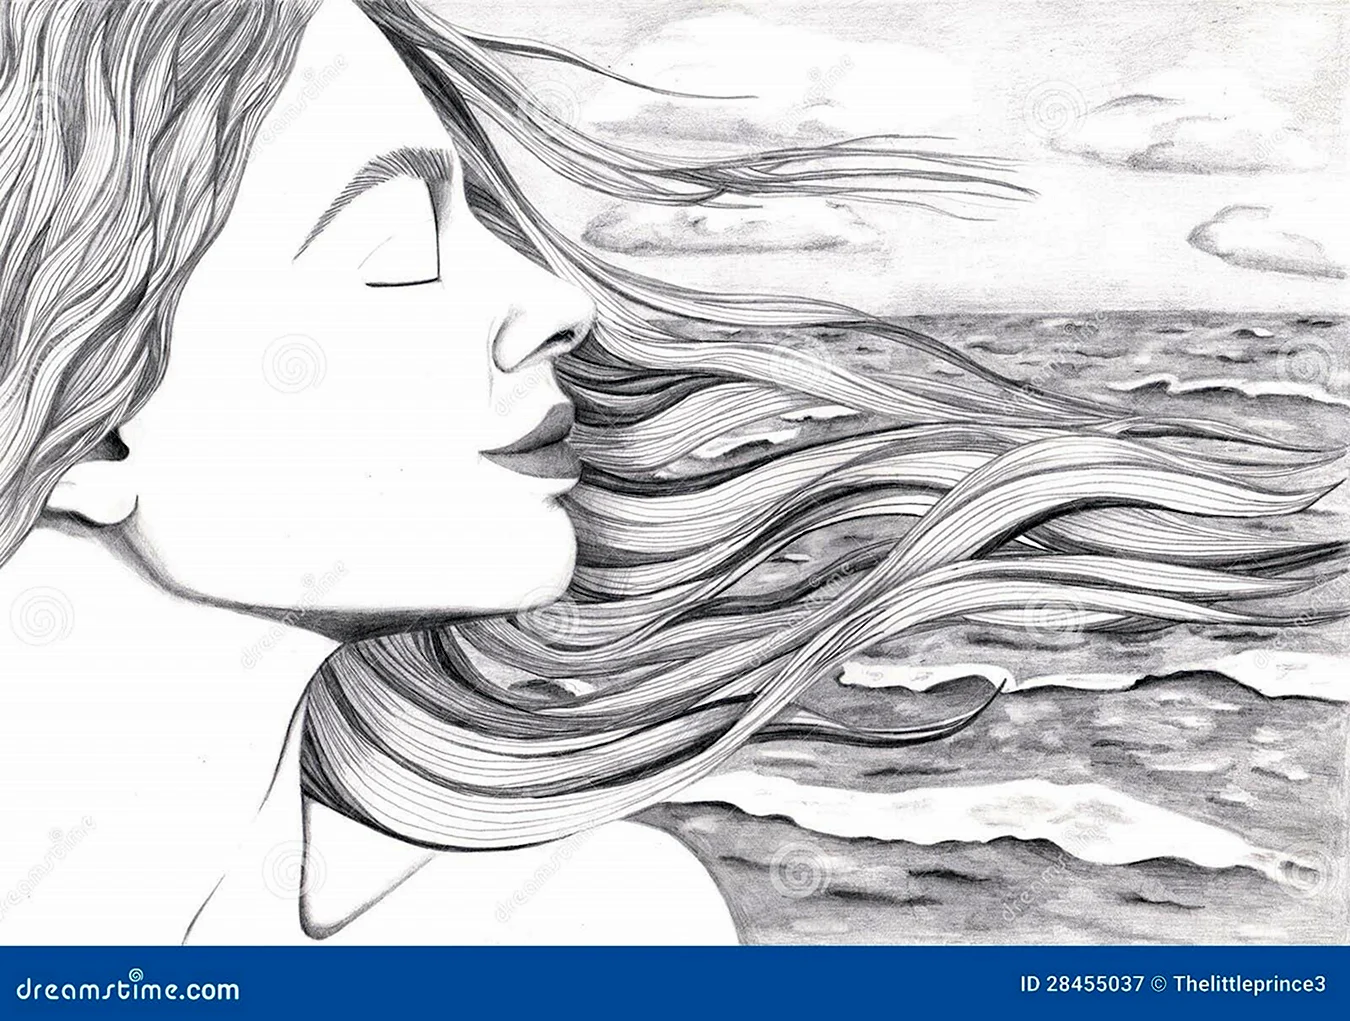 Девушка у моря рисунок карандашом. Для срисовки